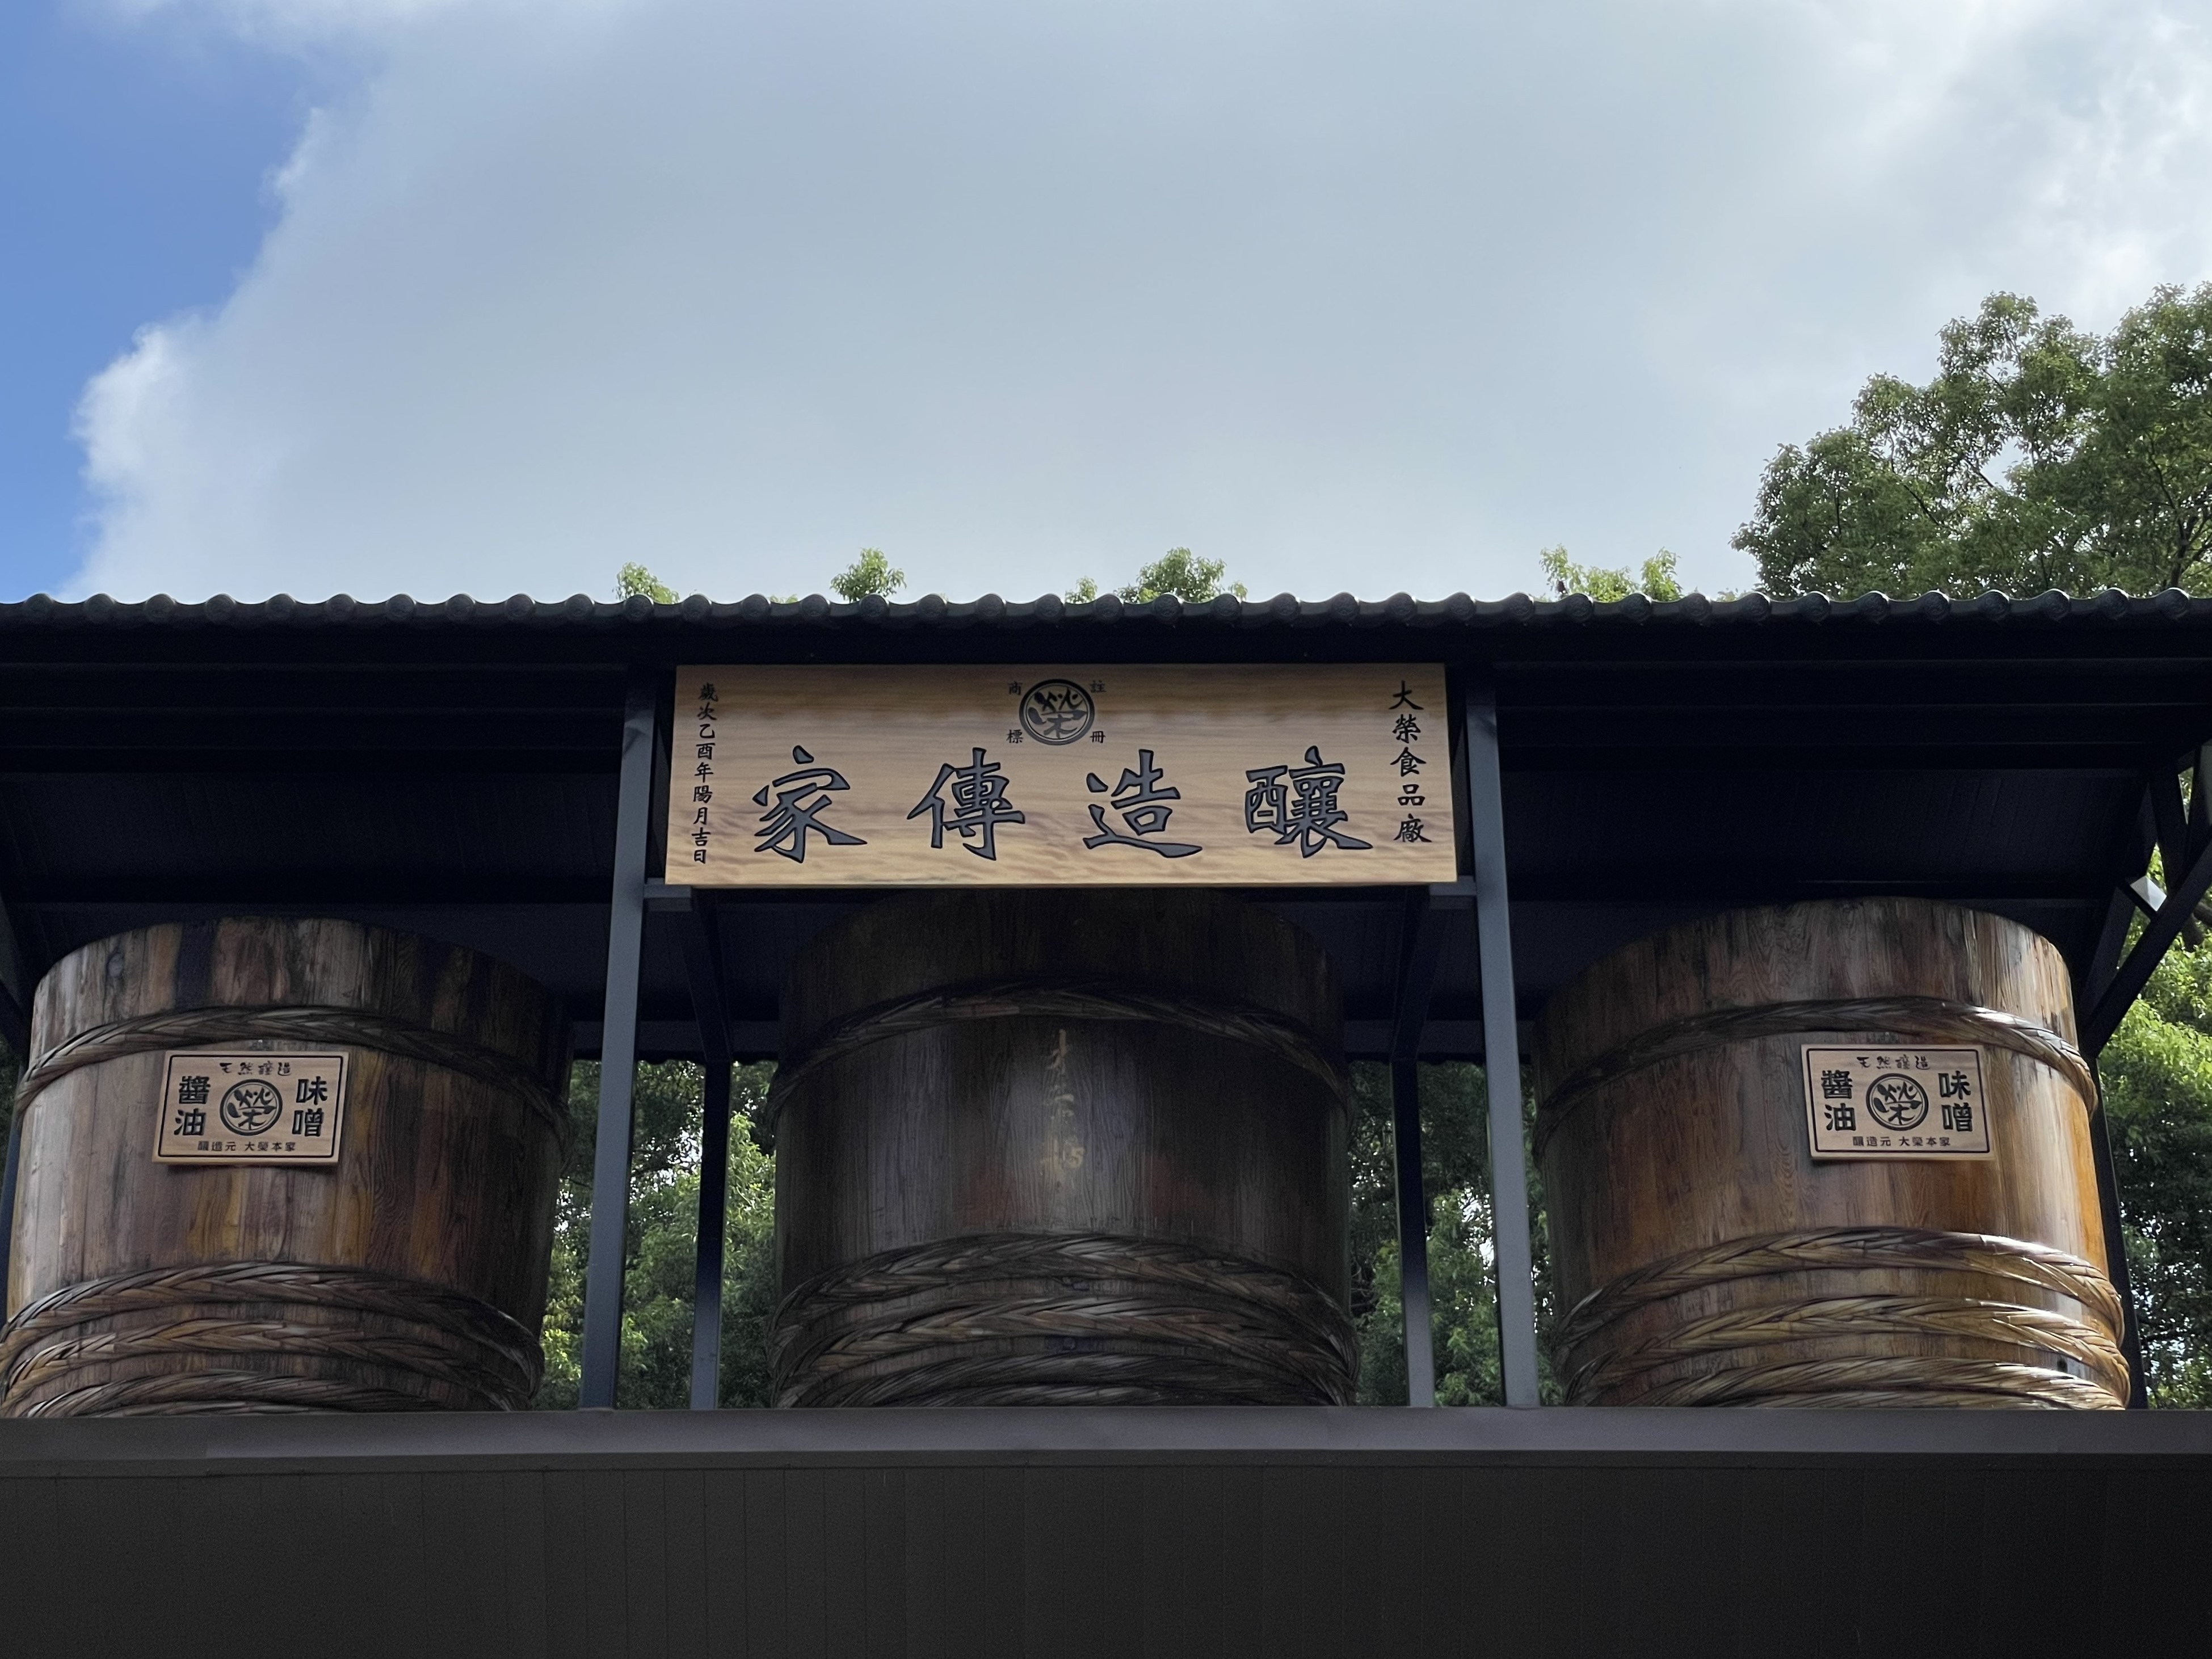 「Brewing Heirloom」の3つの醸造用木樽像ホルダーは、百年以上の醸造所が醸造スタッフの精神とクラフトマンシップに忠実であることを宣言するために設置されています。